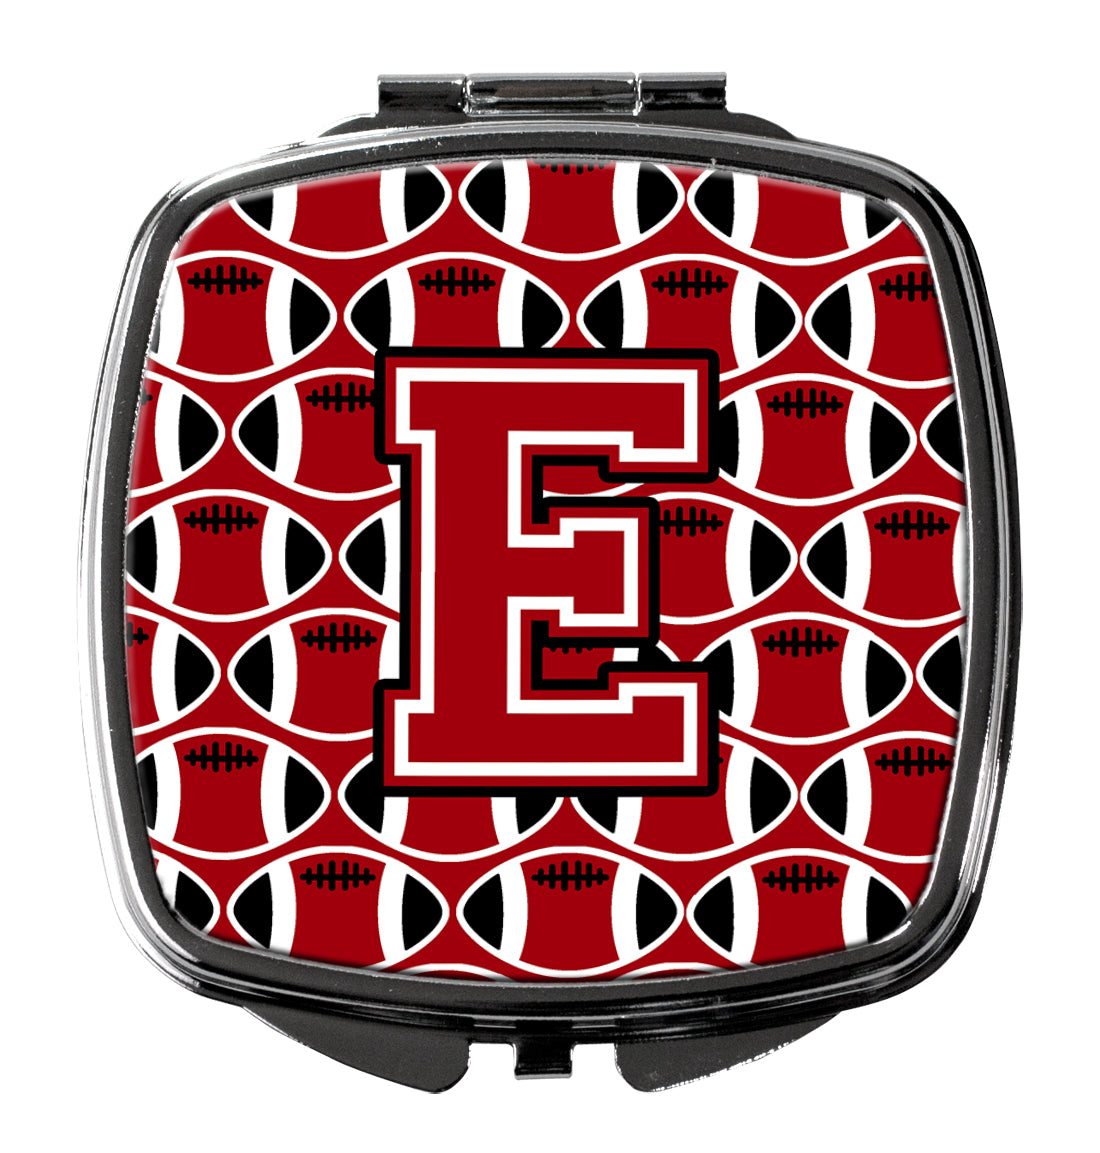 Letter E Football Red, Black and White Compact Mirror CJ1073-ESCM  the-store.com.